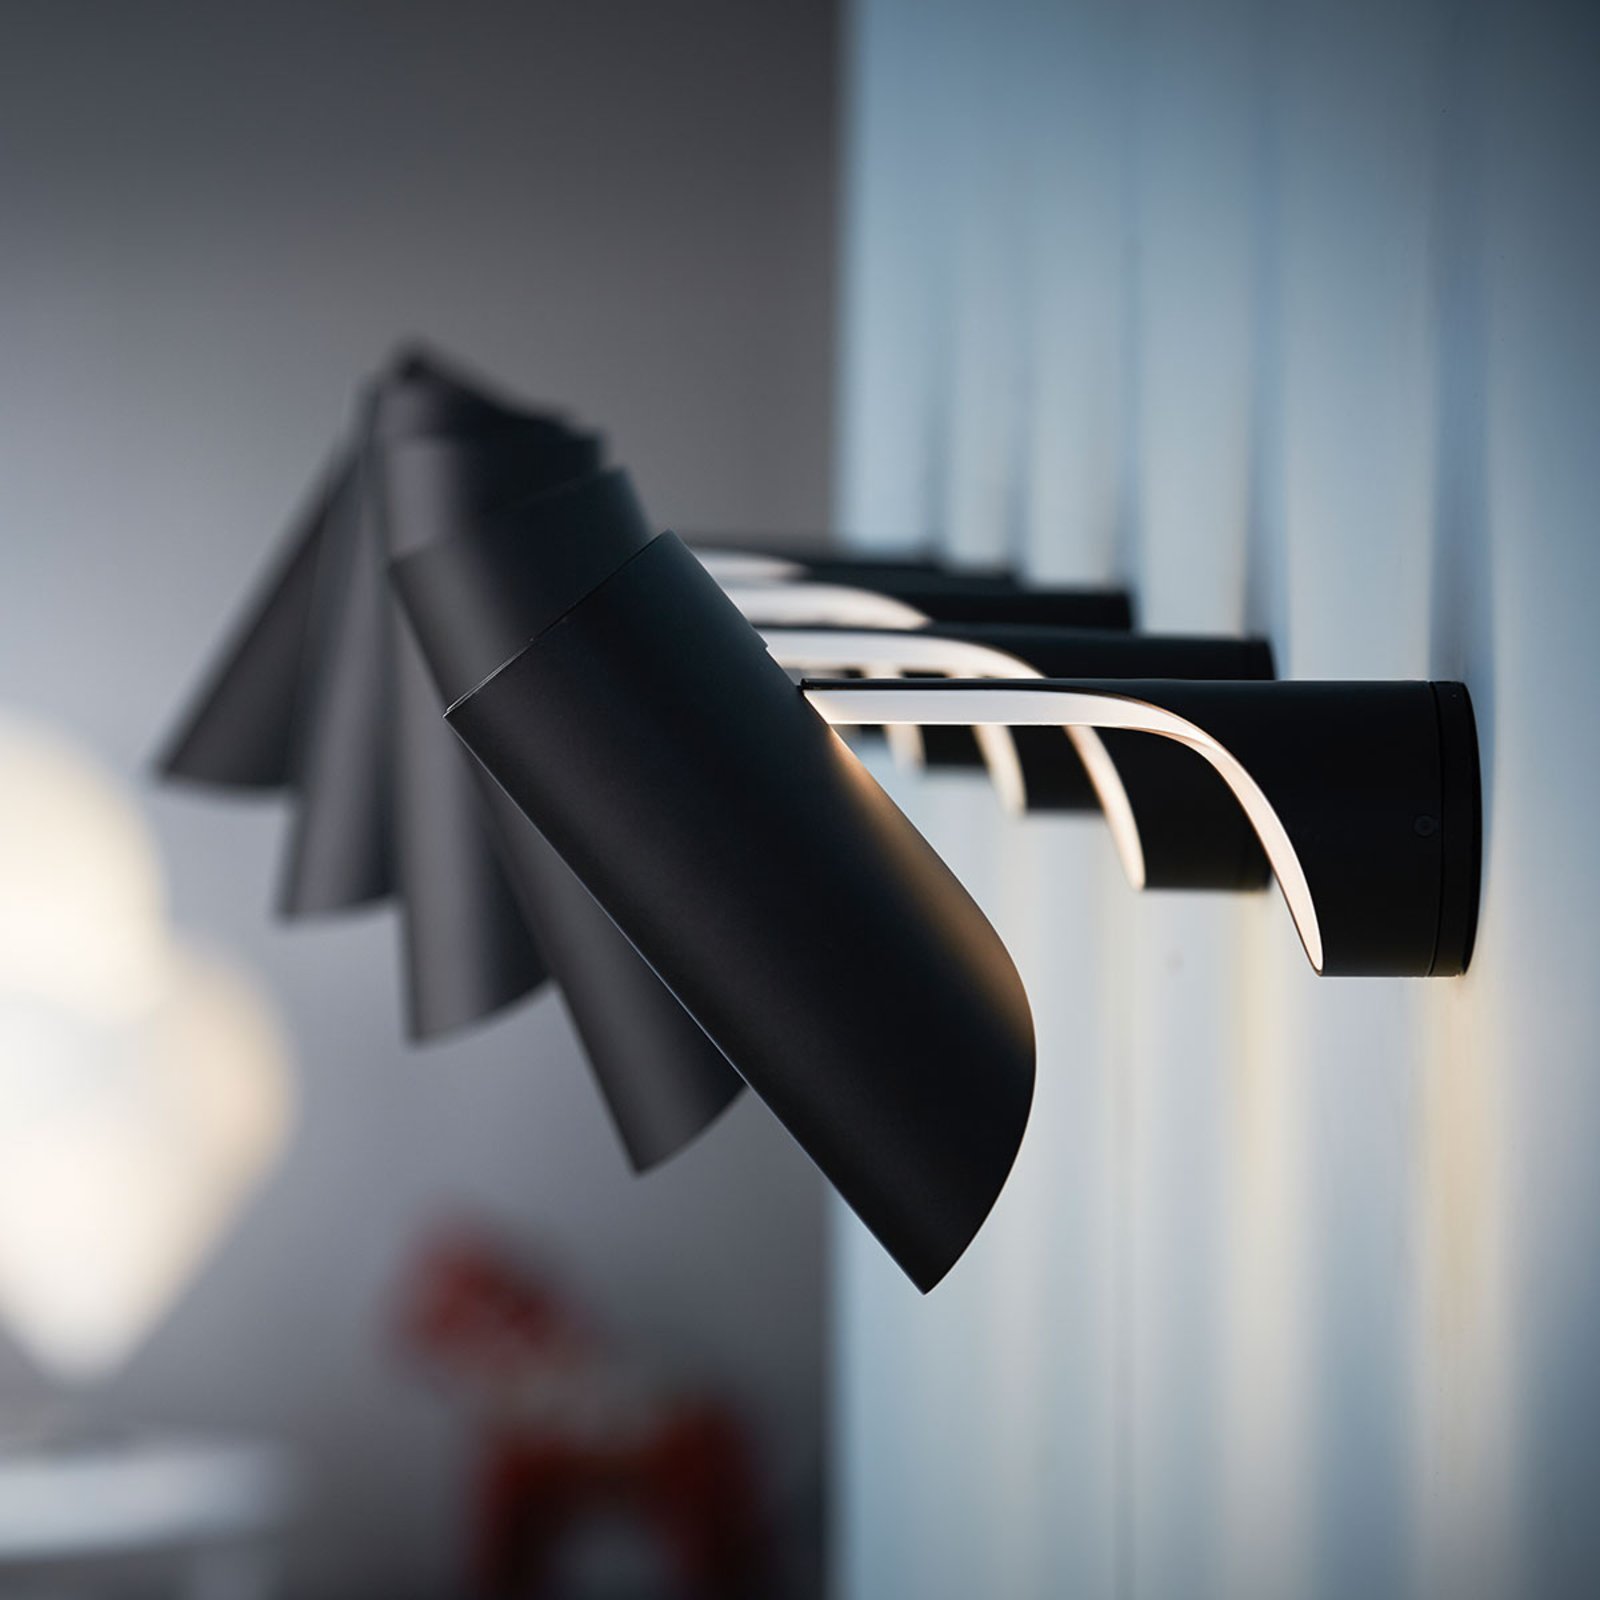 LE KLINT Mutatio - Designer-Wandlampe mit Stecker